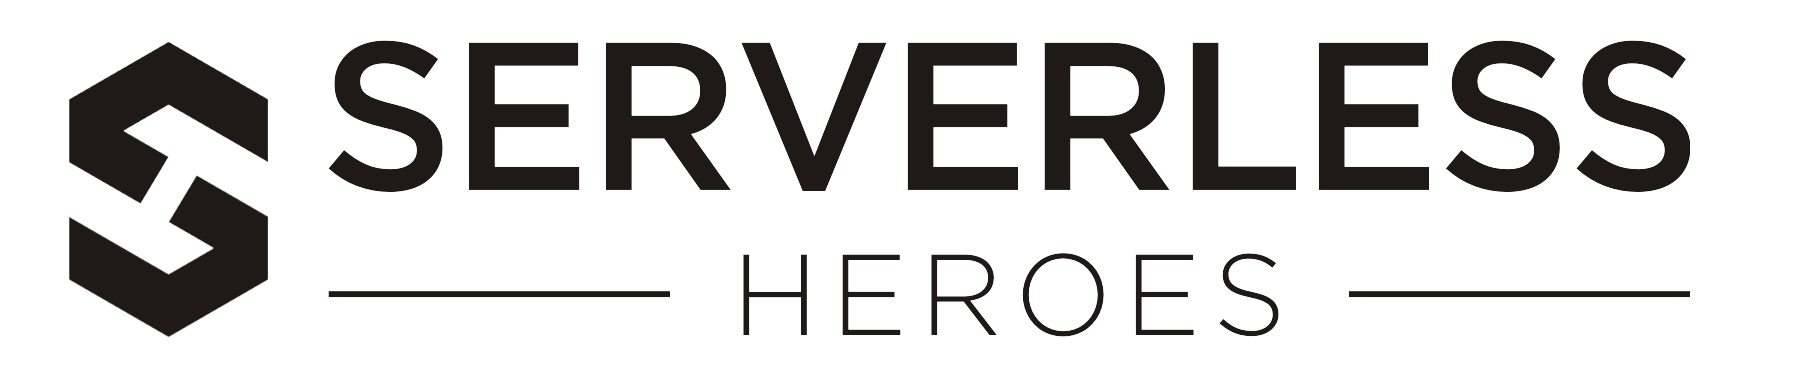 Serverless Heroes Logo